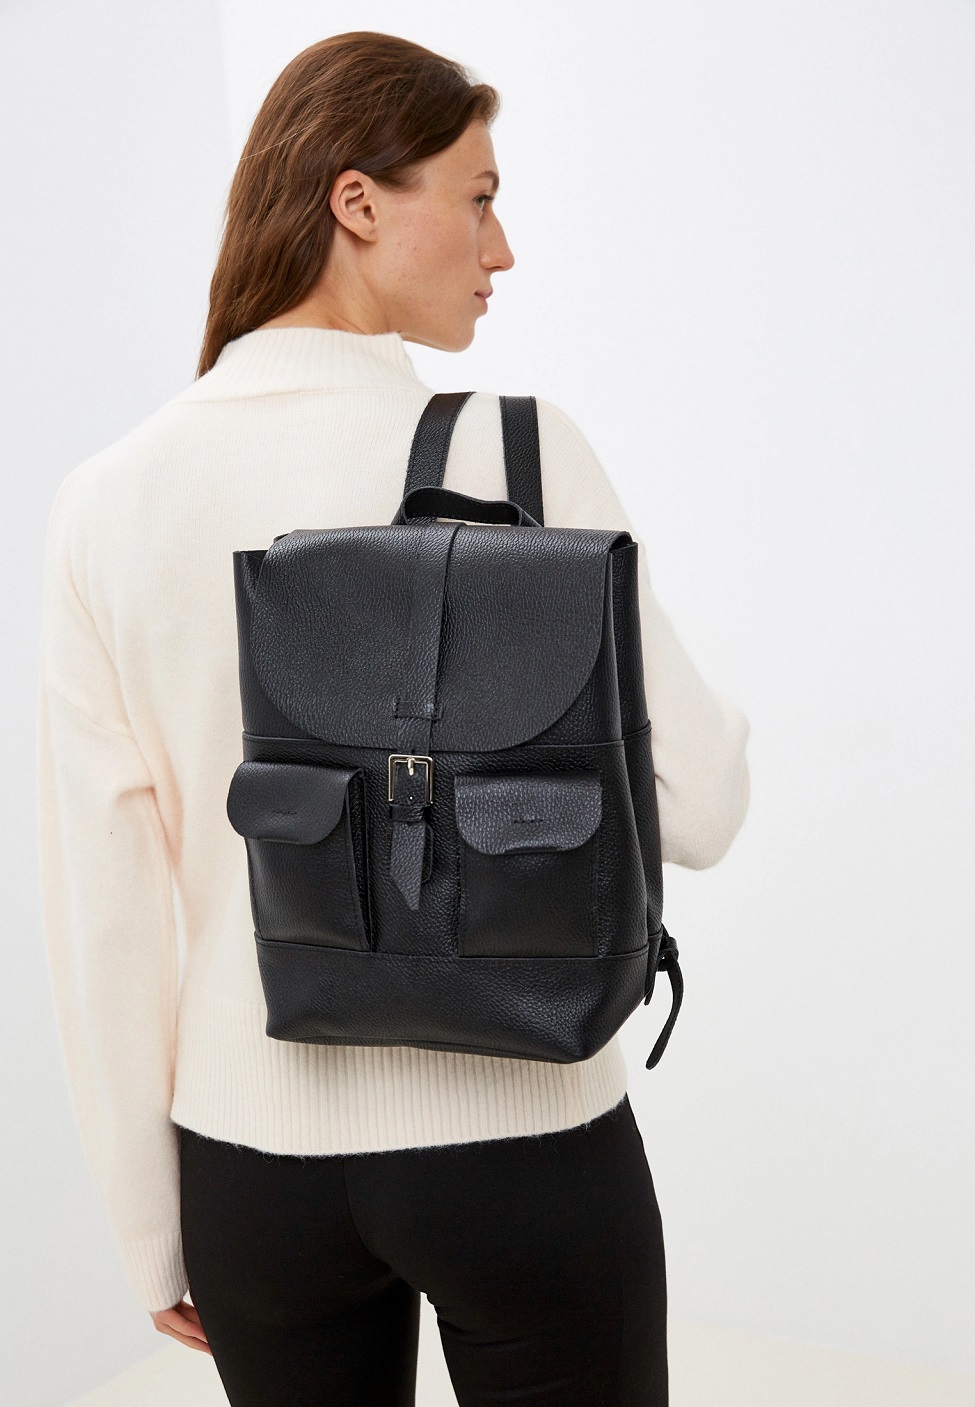 Женский кожаный рюкзак с карманами черный B010 black grain